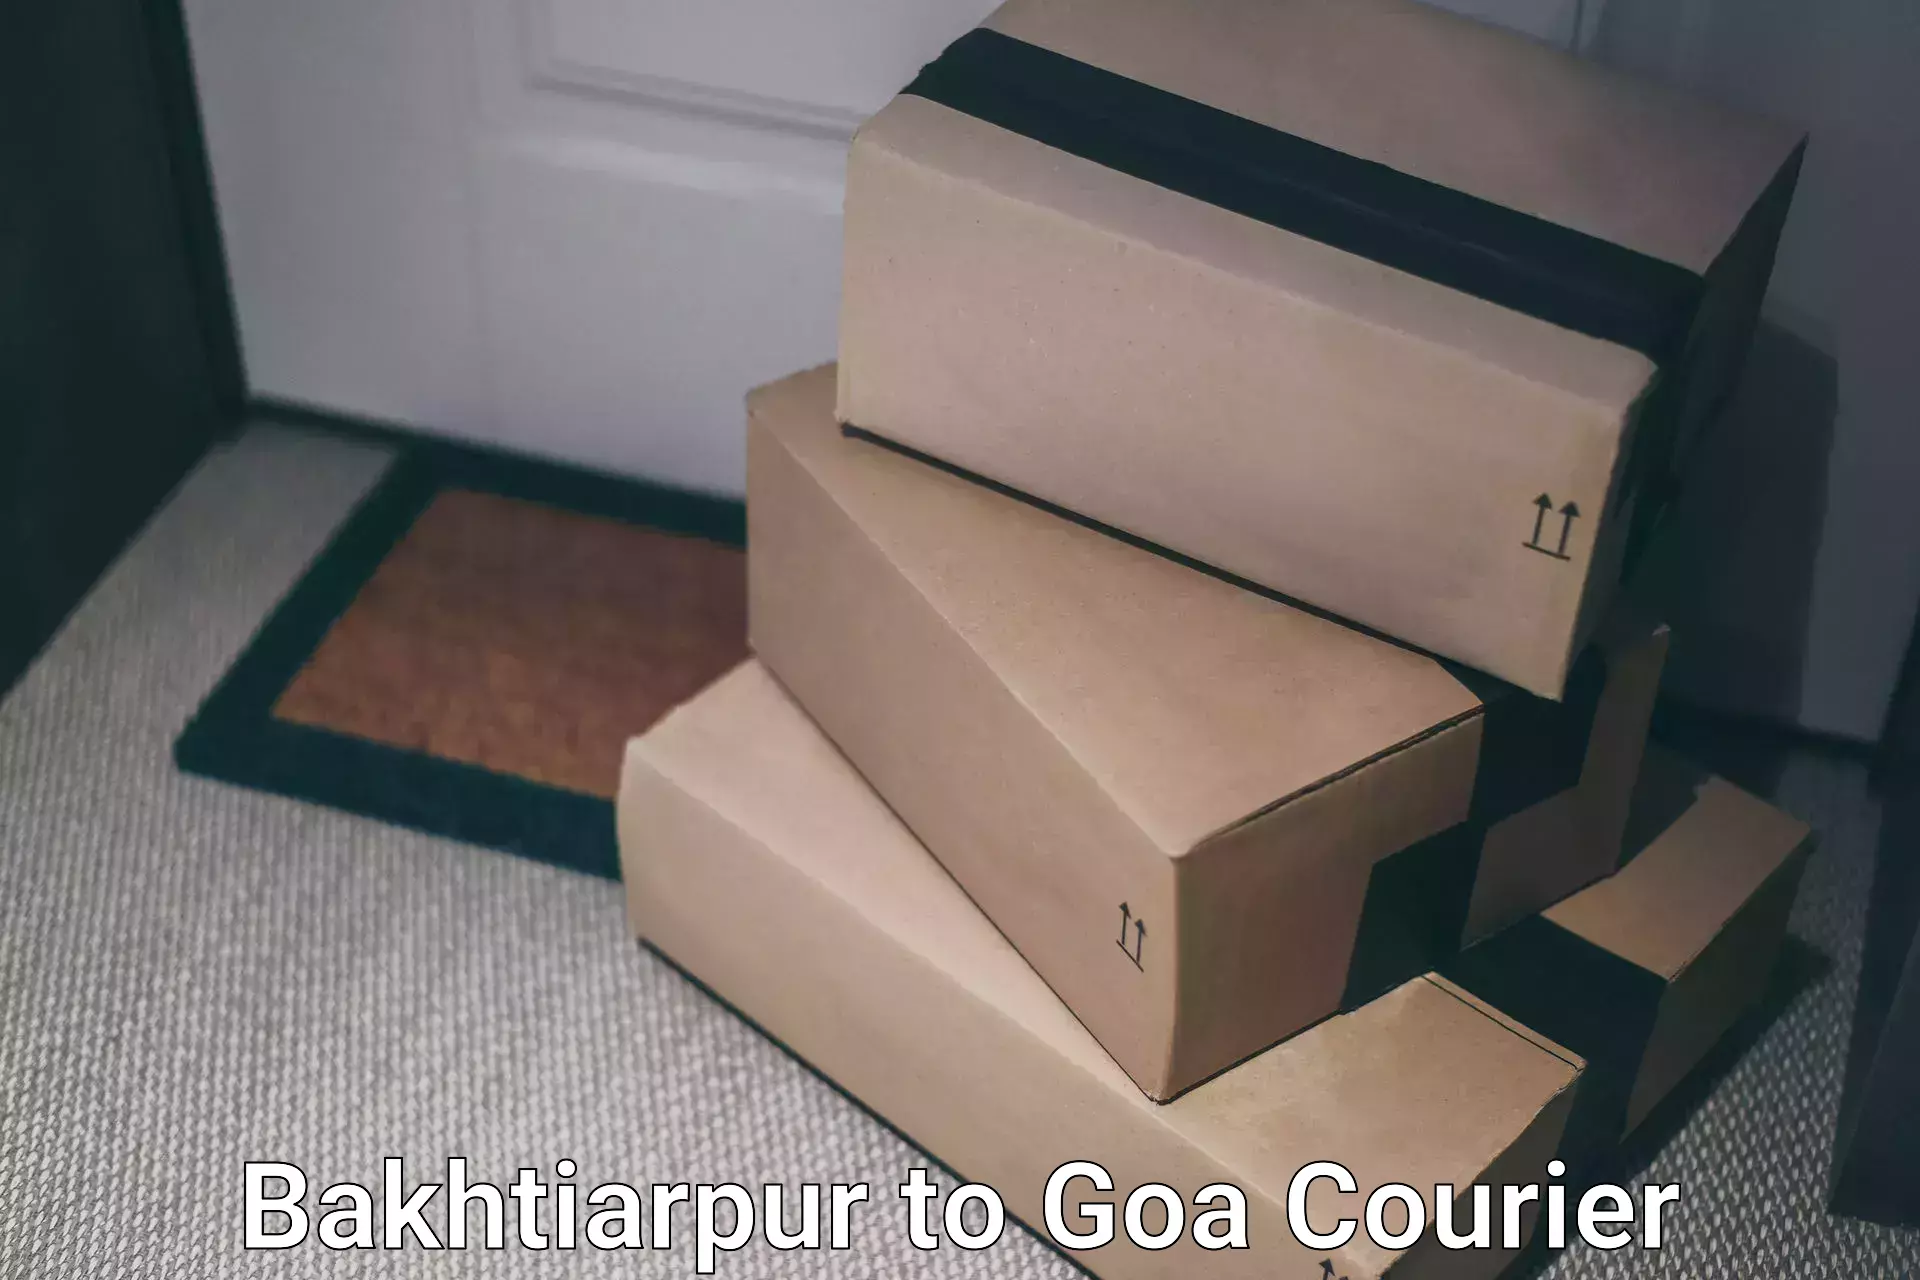 Online shipping calculator Bakhtiarpur to South Goa